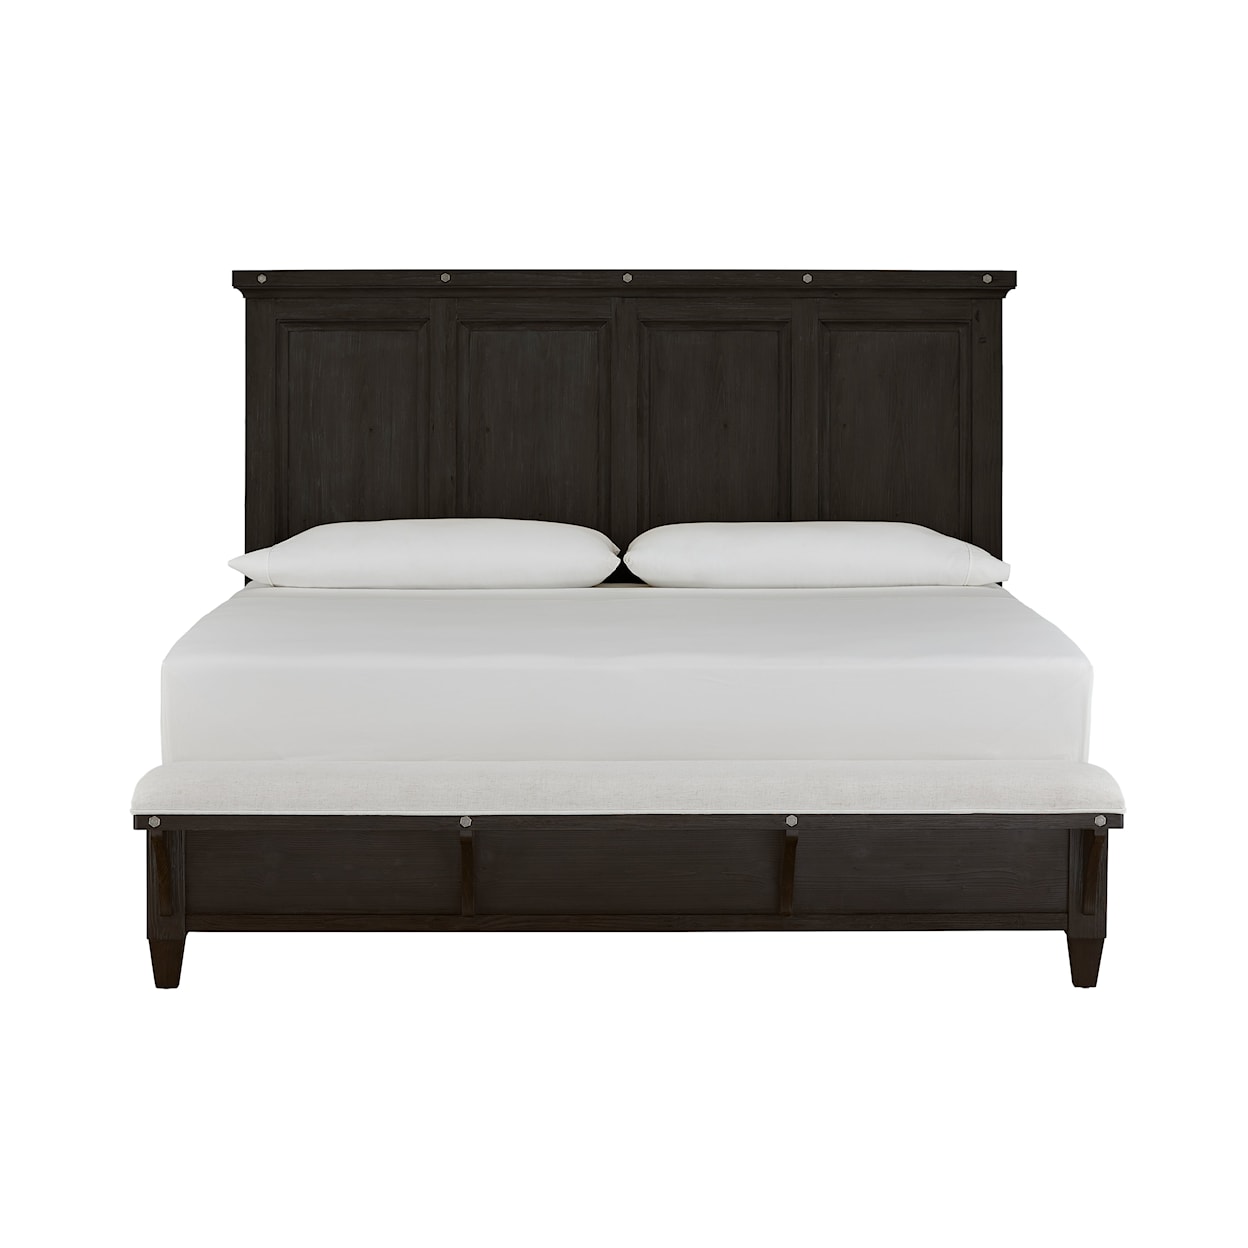 Magnussen Home Sierra Bedroom Queen Panel Bed with Bench